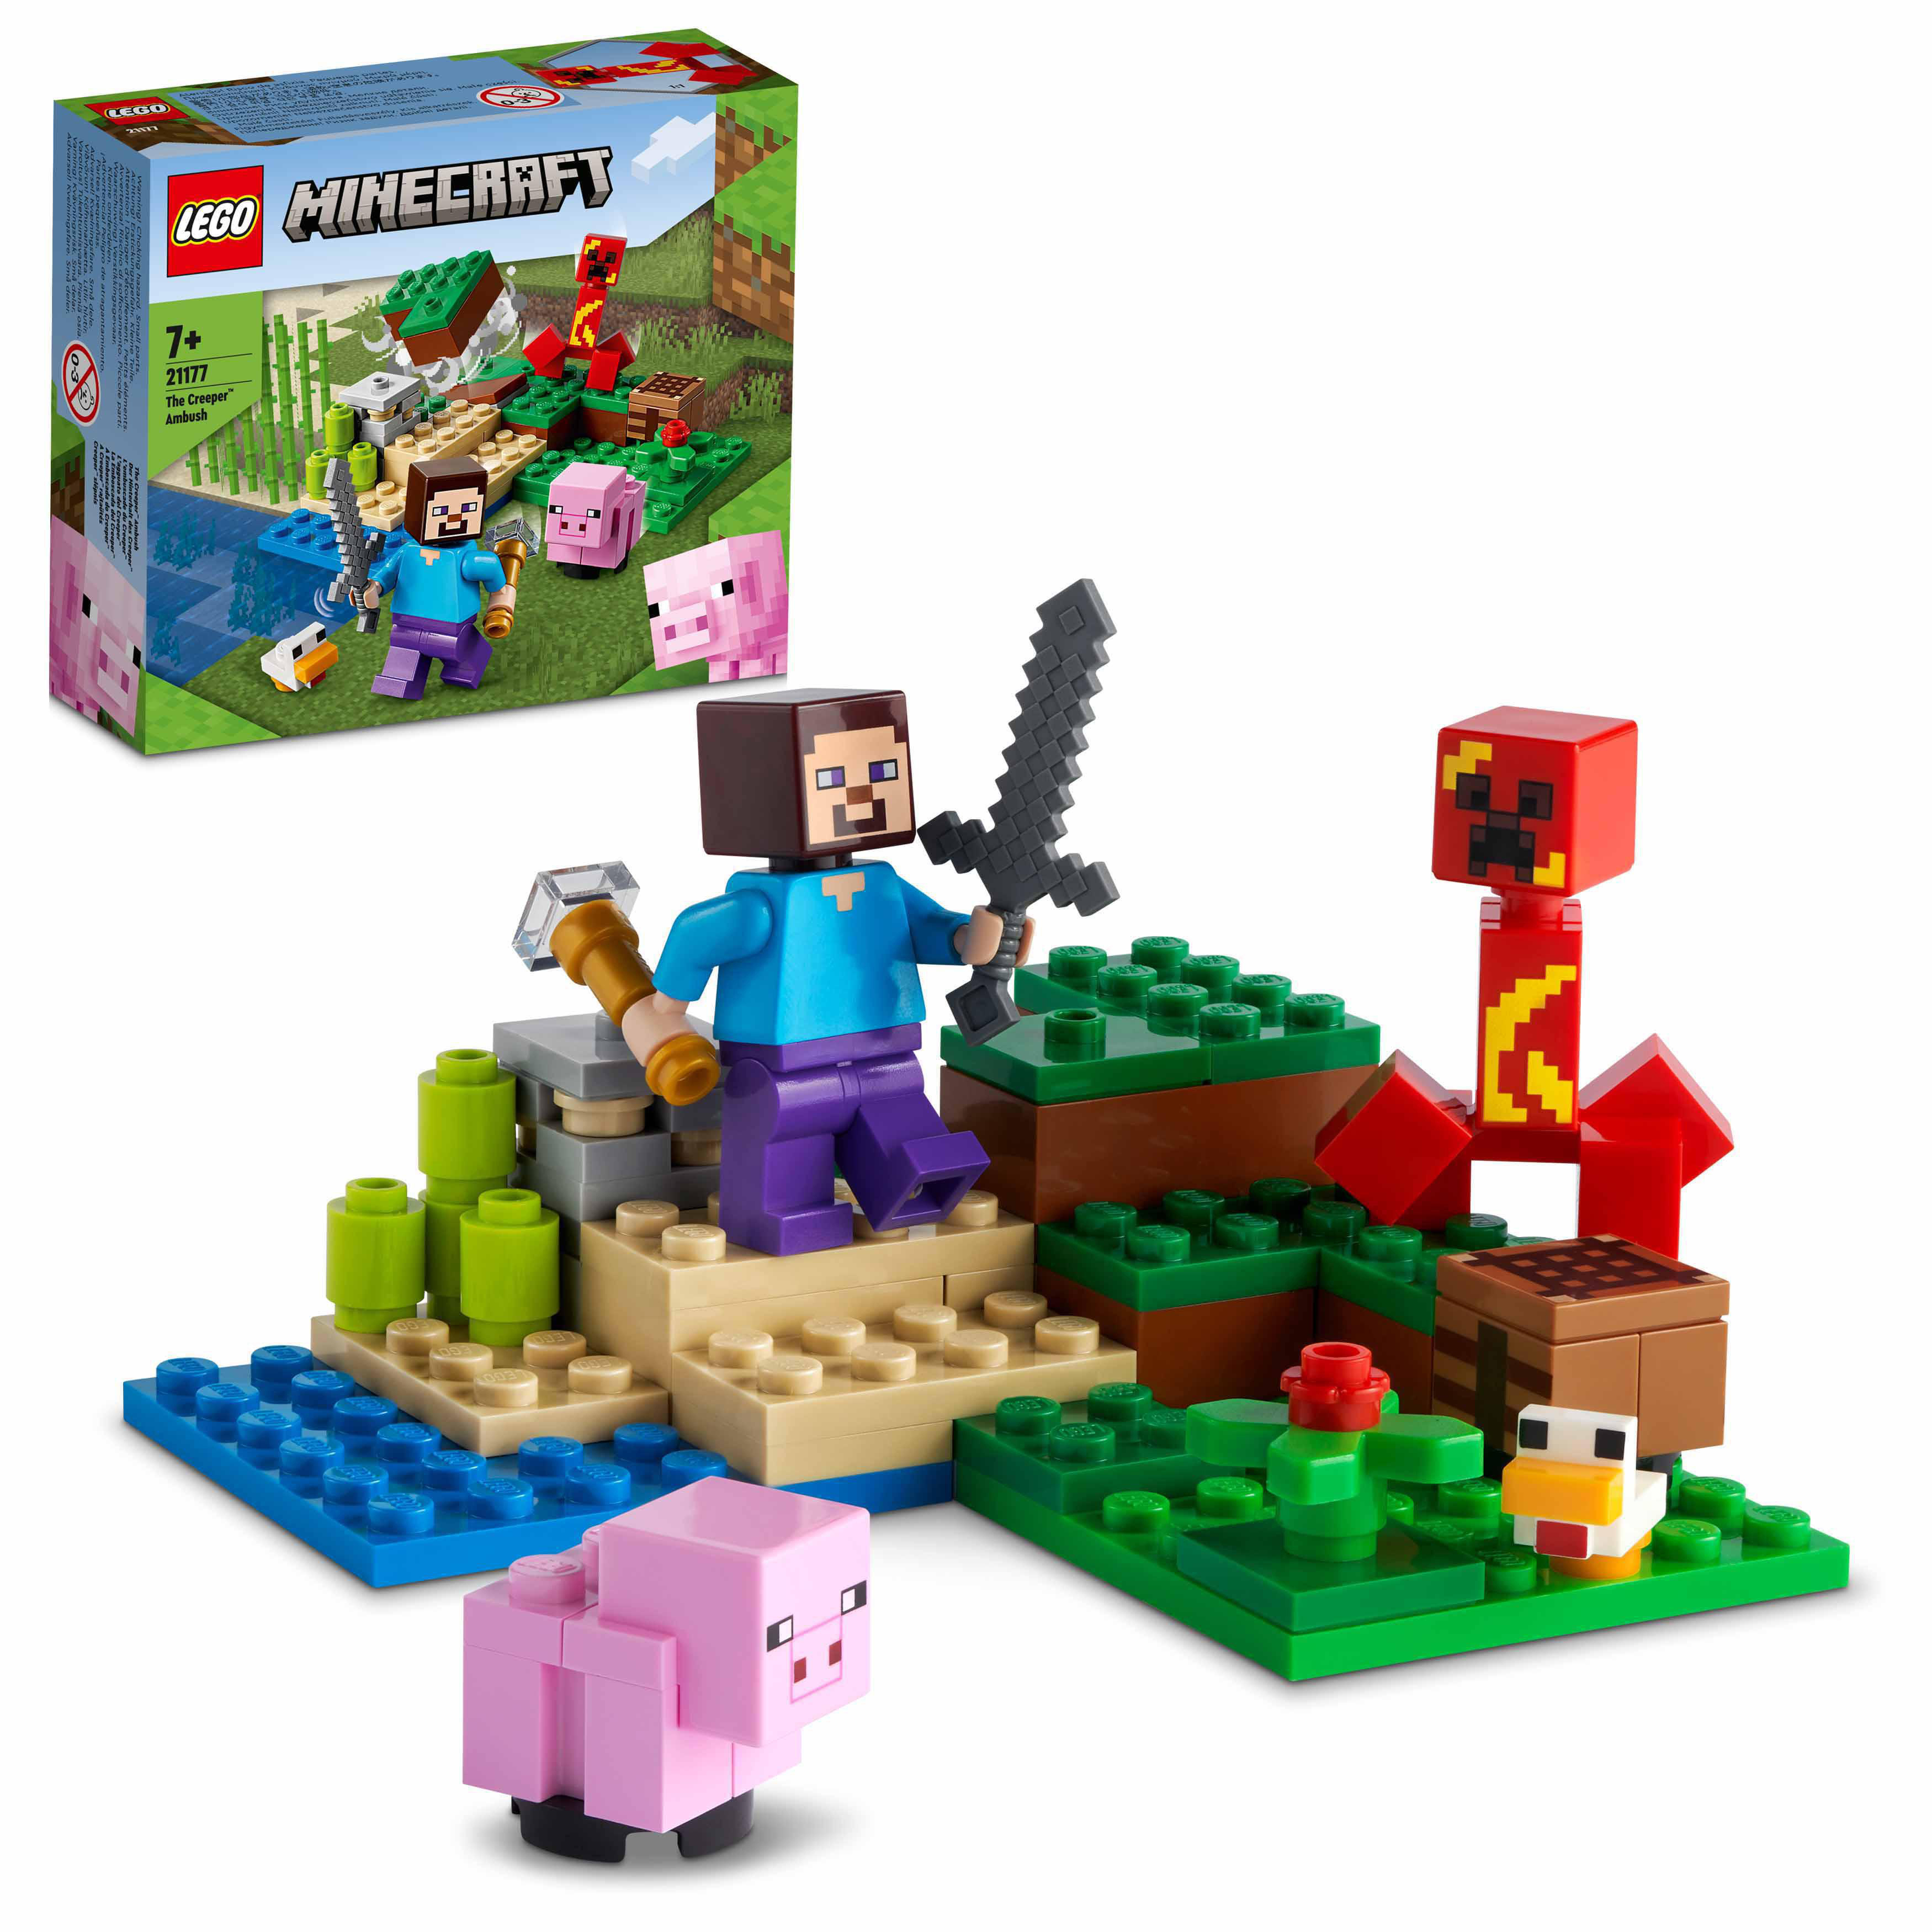 LEGO Minecraft 21177 Der Hinterhalt Creeper™ des Mehrfarbig Bausatz